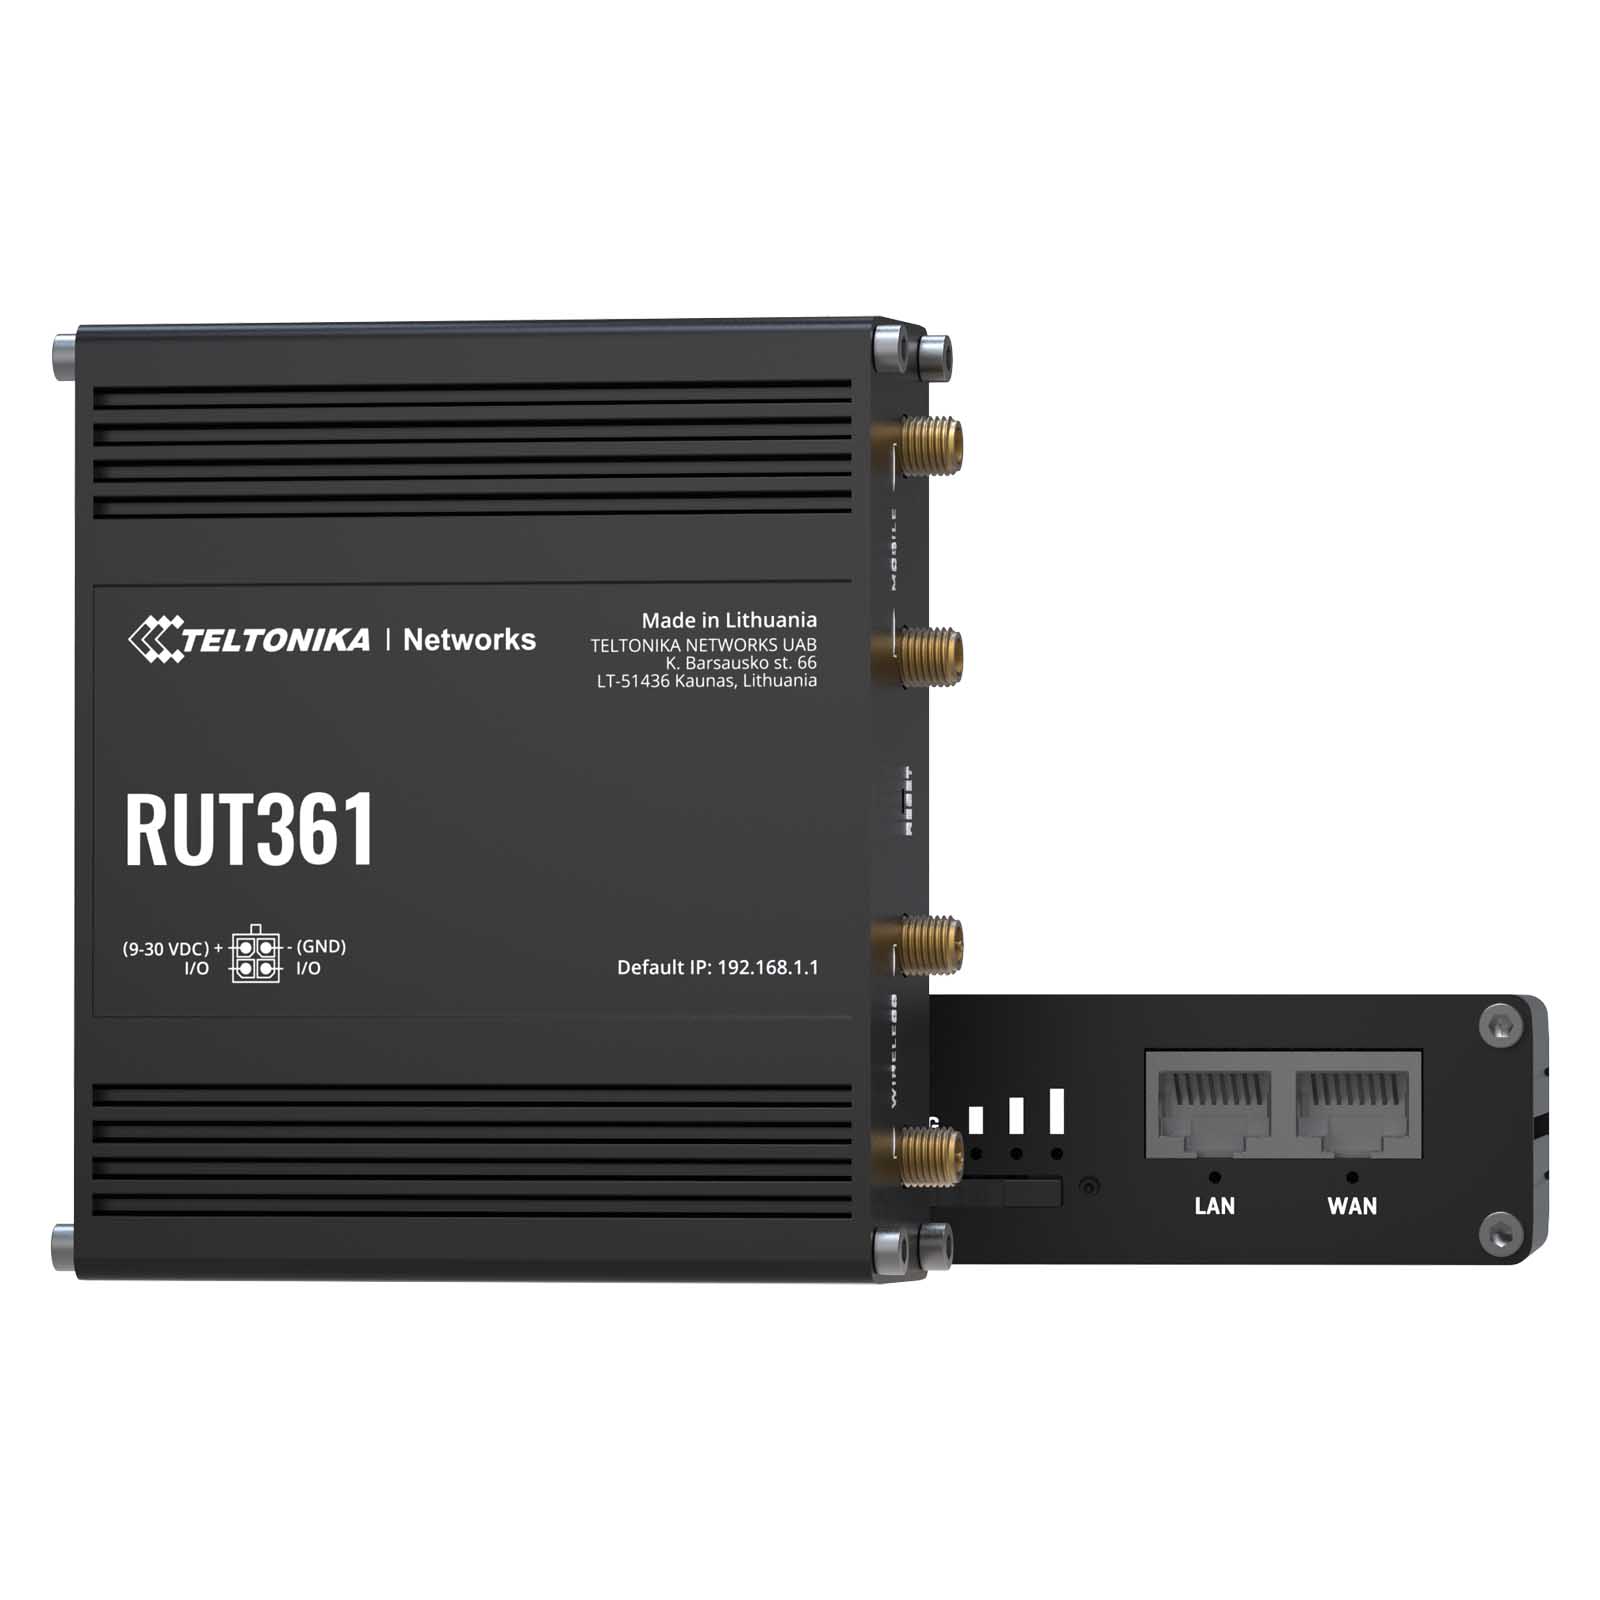 Zdjęcia - Urządzenie sieciowe Teltonika RUT361 router LTE  (RUT361100000)